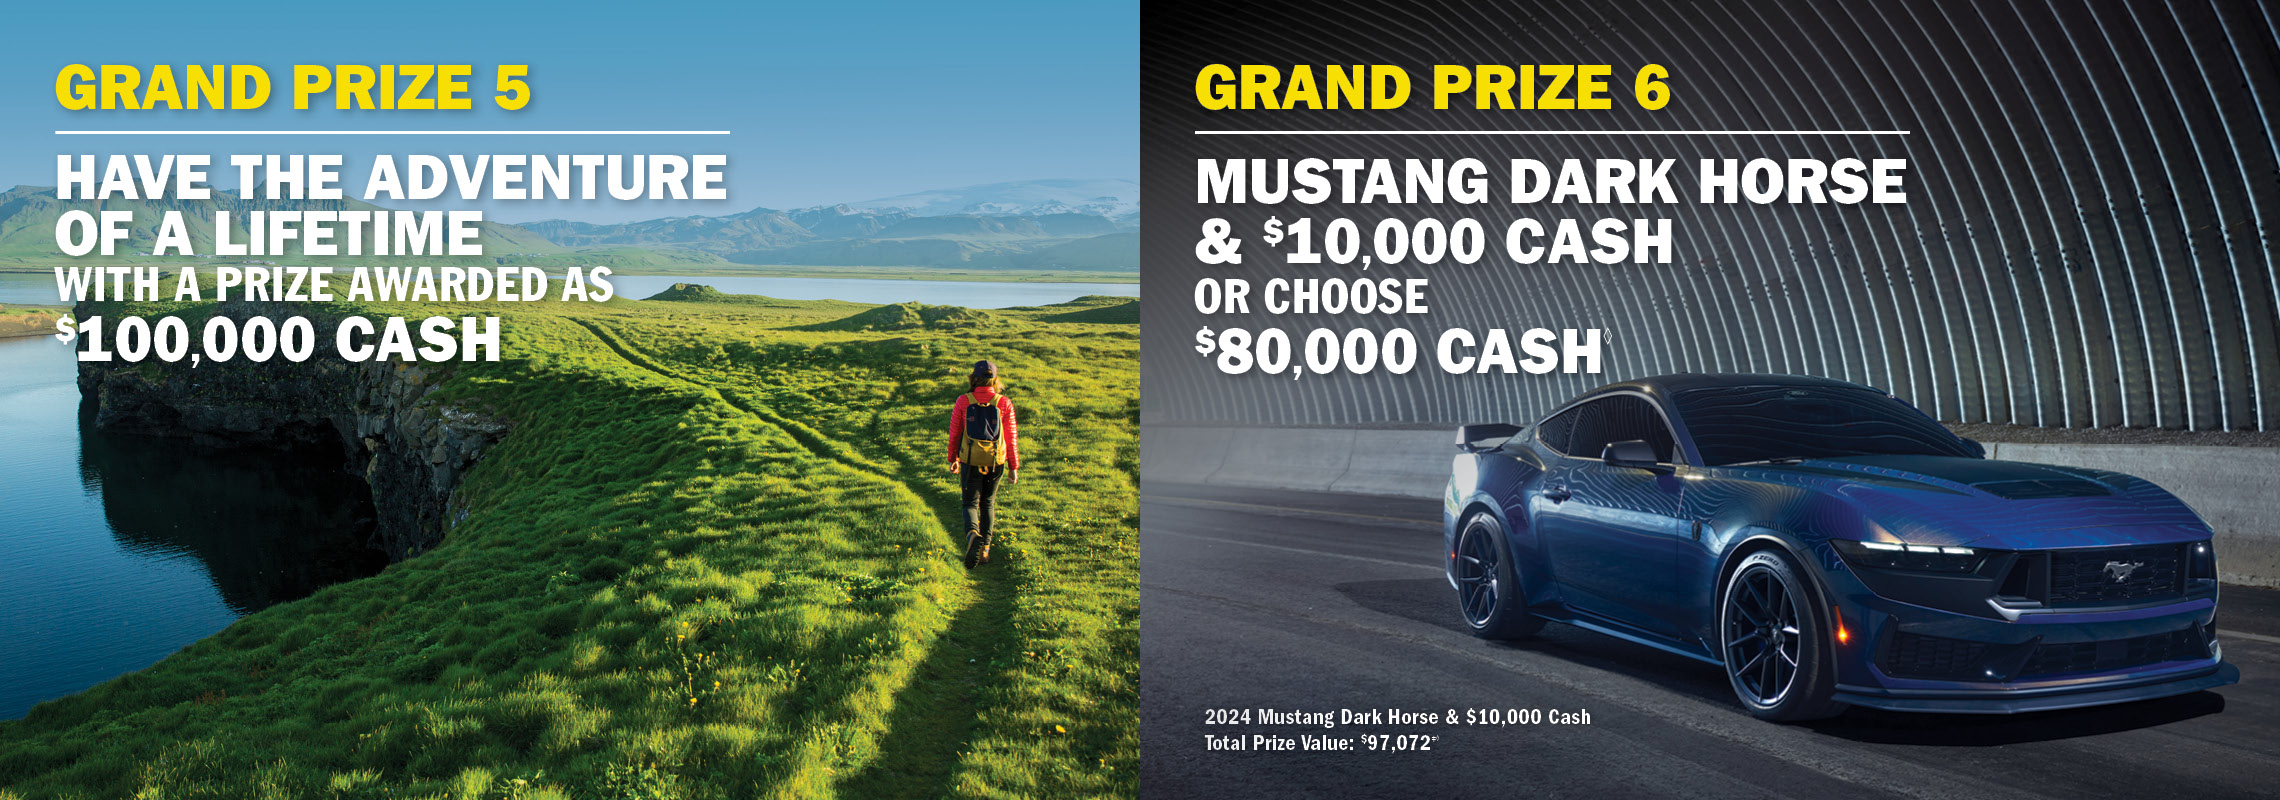 Grand Prize 5 Ford F-150 Lightning XLT & $10,000 cash OR choose $75,000 cash. Grand Prize 6 - Cadillac Lyriq & 10,000 Cash OR choose $74,000 cash.